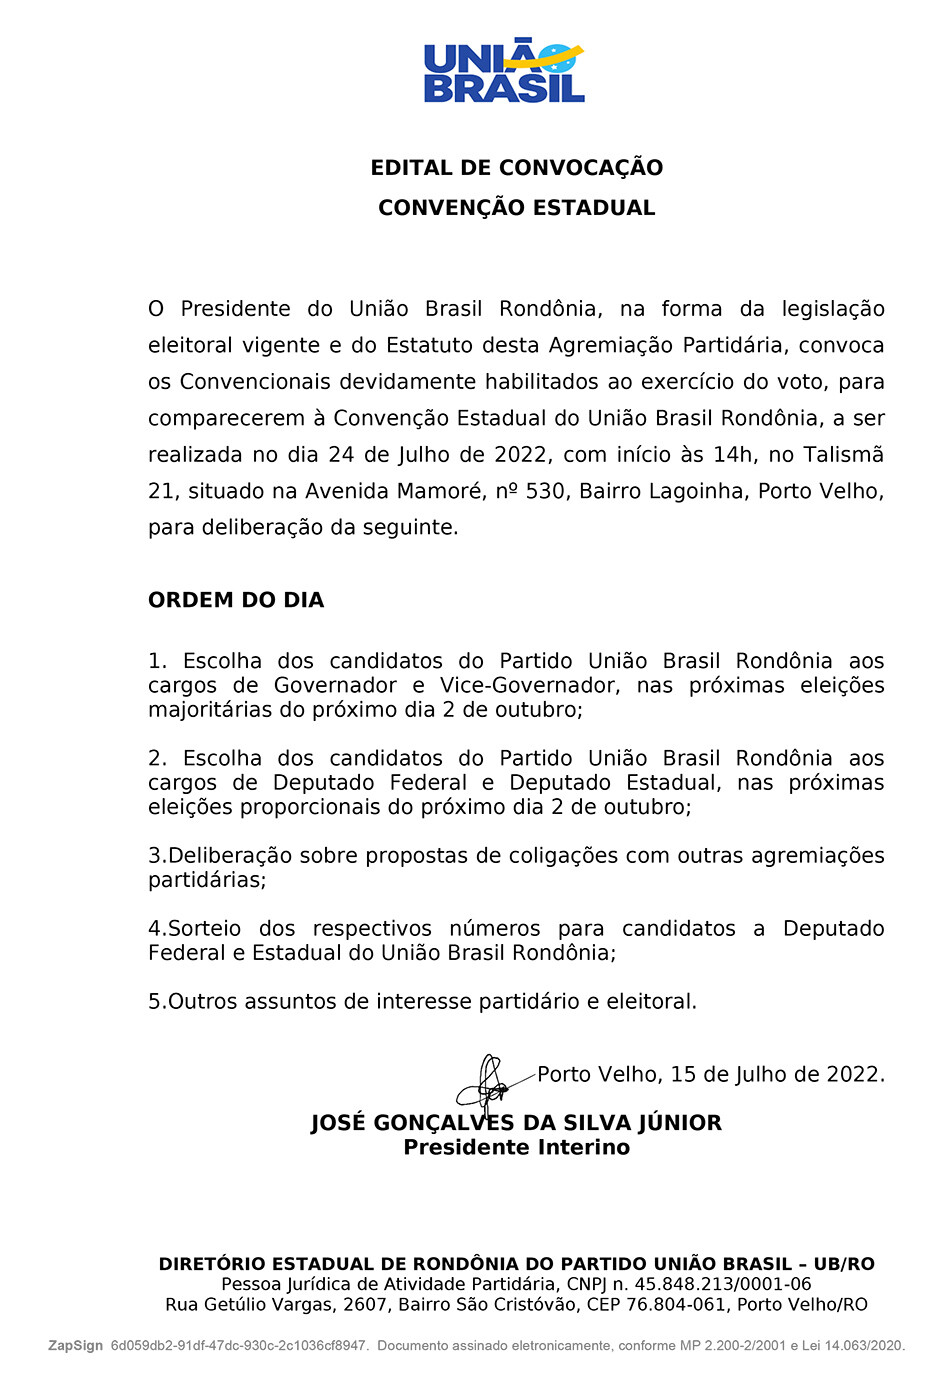 União Brasil Rondônia - Edital de Convenção Estadual 